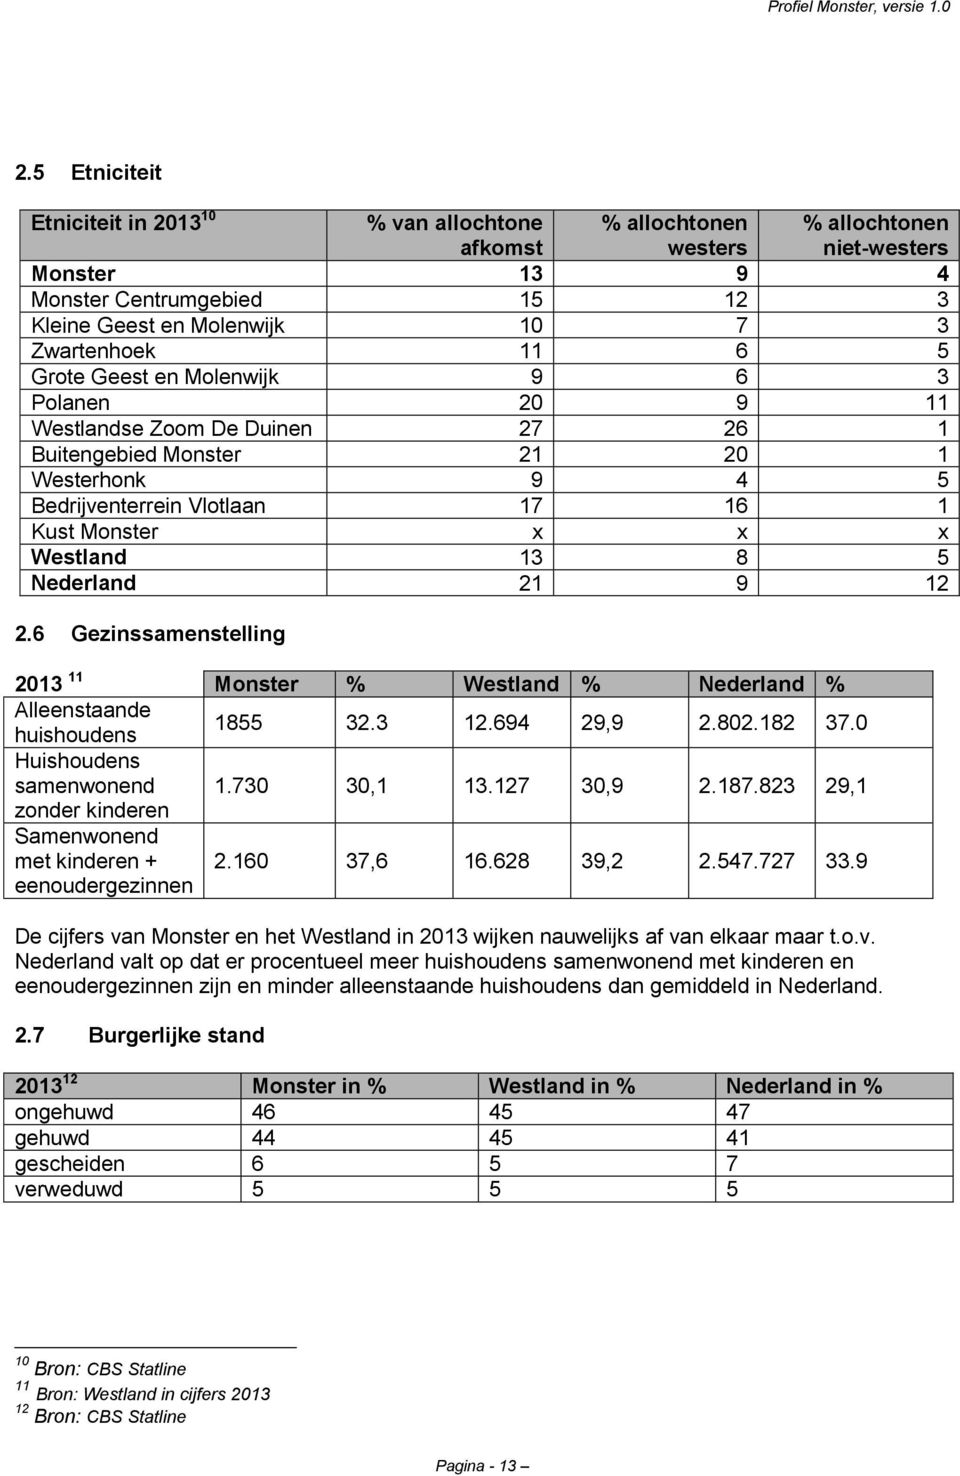 Westland 13 8 5 Nederland 21 9 12 2.6 Gezinssamenstelling 2013 11 Monster % Westland % Nederland % Alleenstaande huishoudens 1855 32.3 12.694 29,9 2.802.182 37.0 Huishoudens samenwonend 1.730 30,1 13.